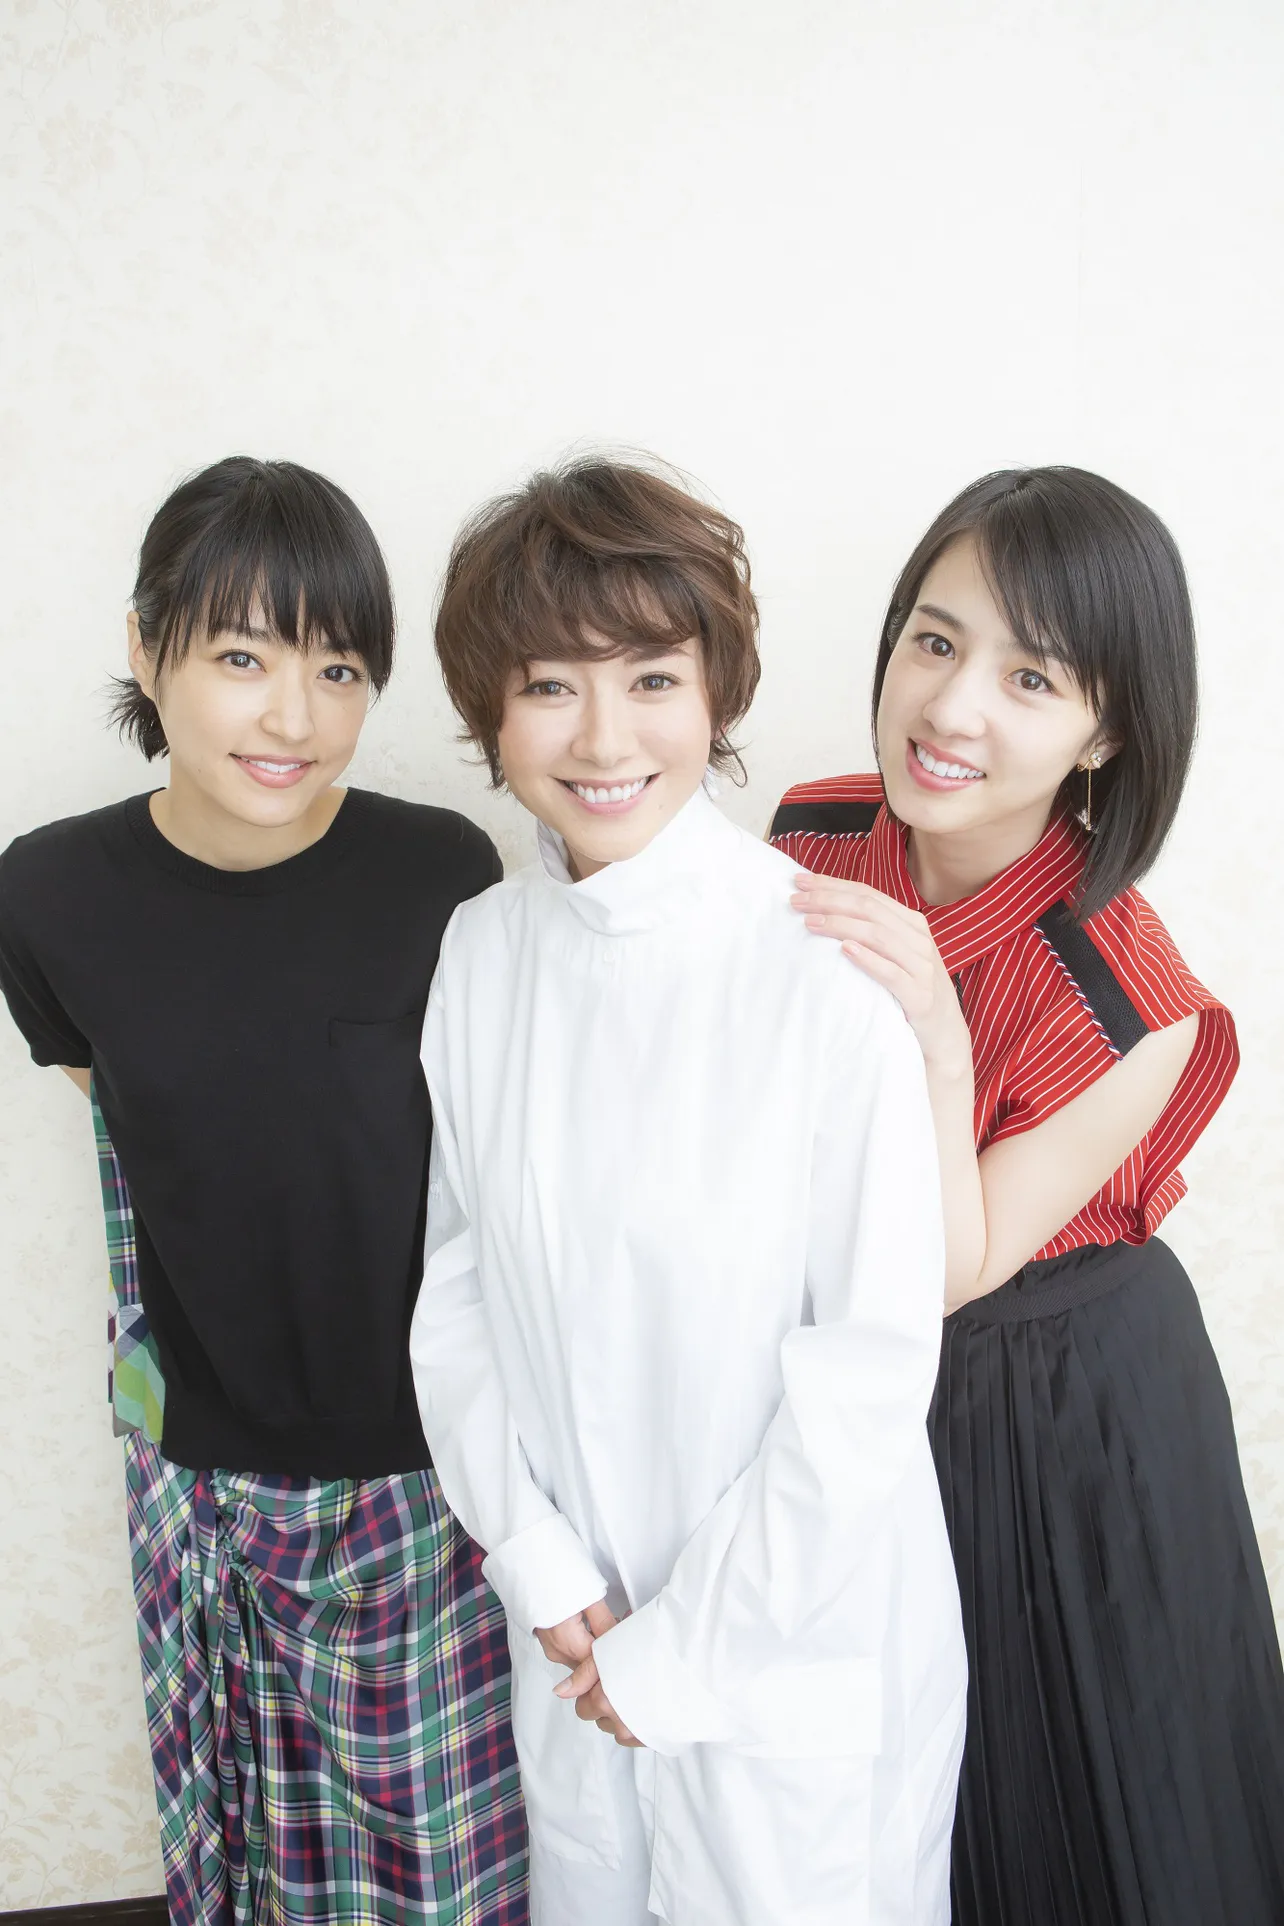 映画「焼肉ドラゴン」で焼き肉店を営む一家の三姉妹を演じている真木よう子、井上真央、桜庭ななみ